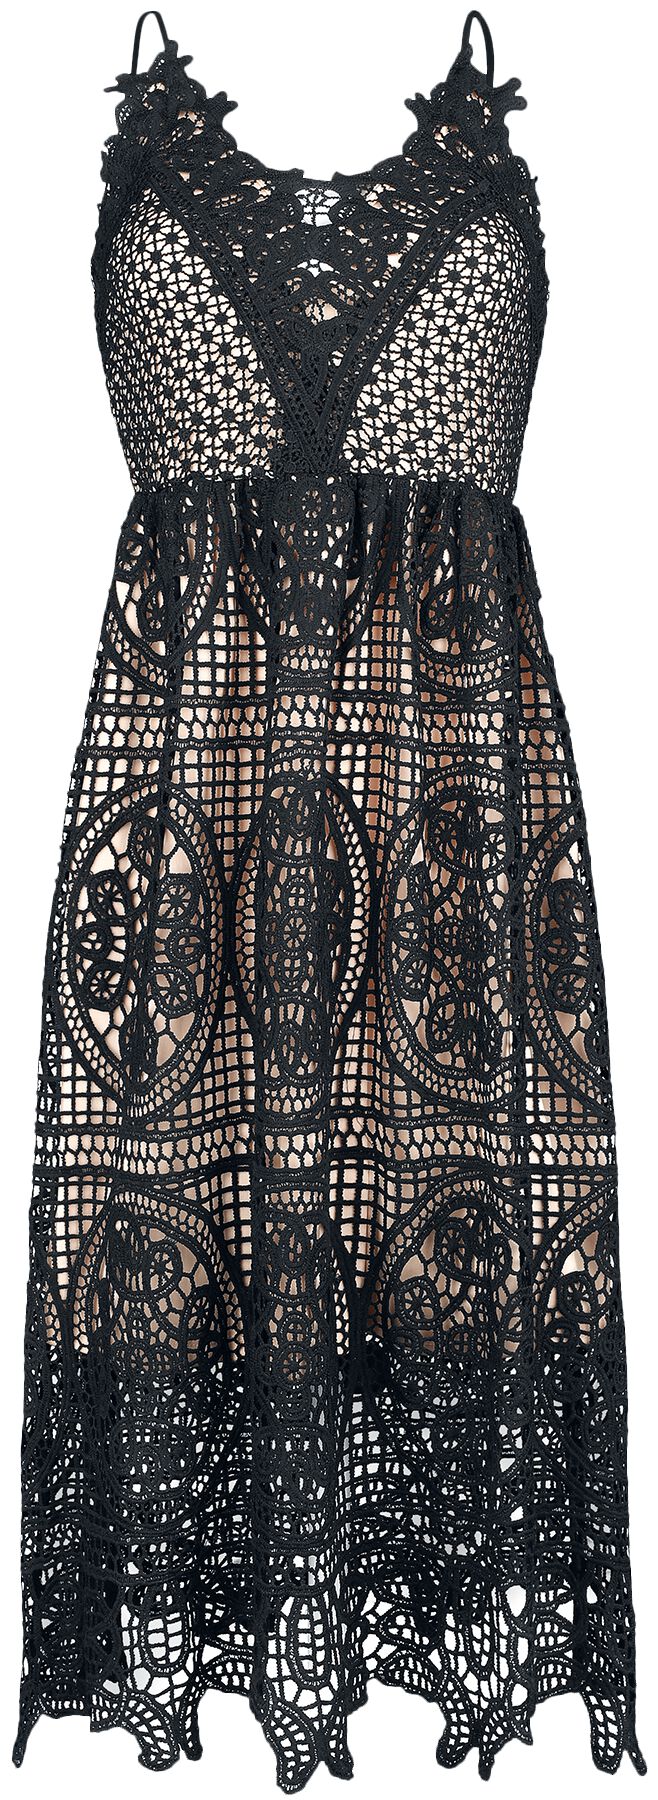 Ocultica Crochet Dress Medium-length dress black beige